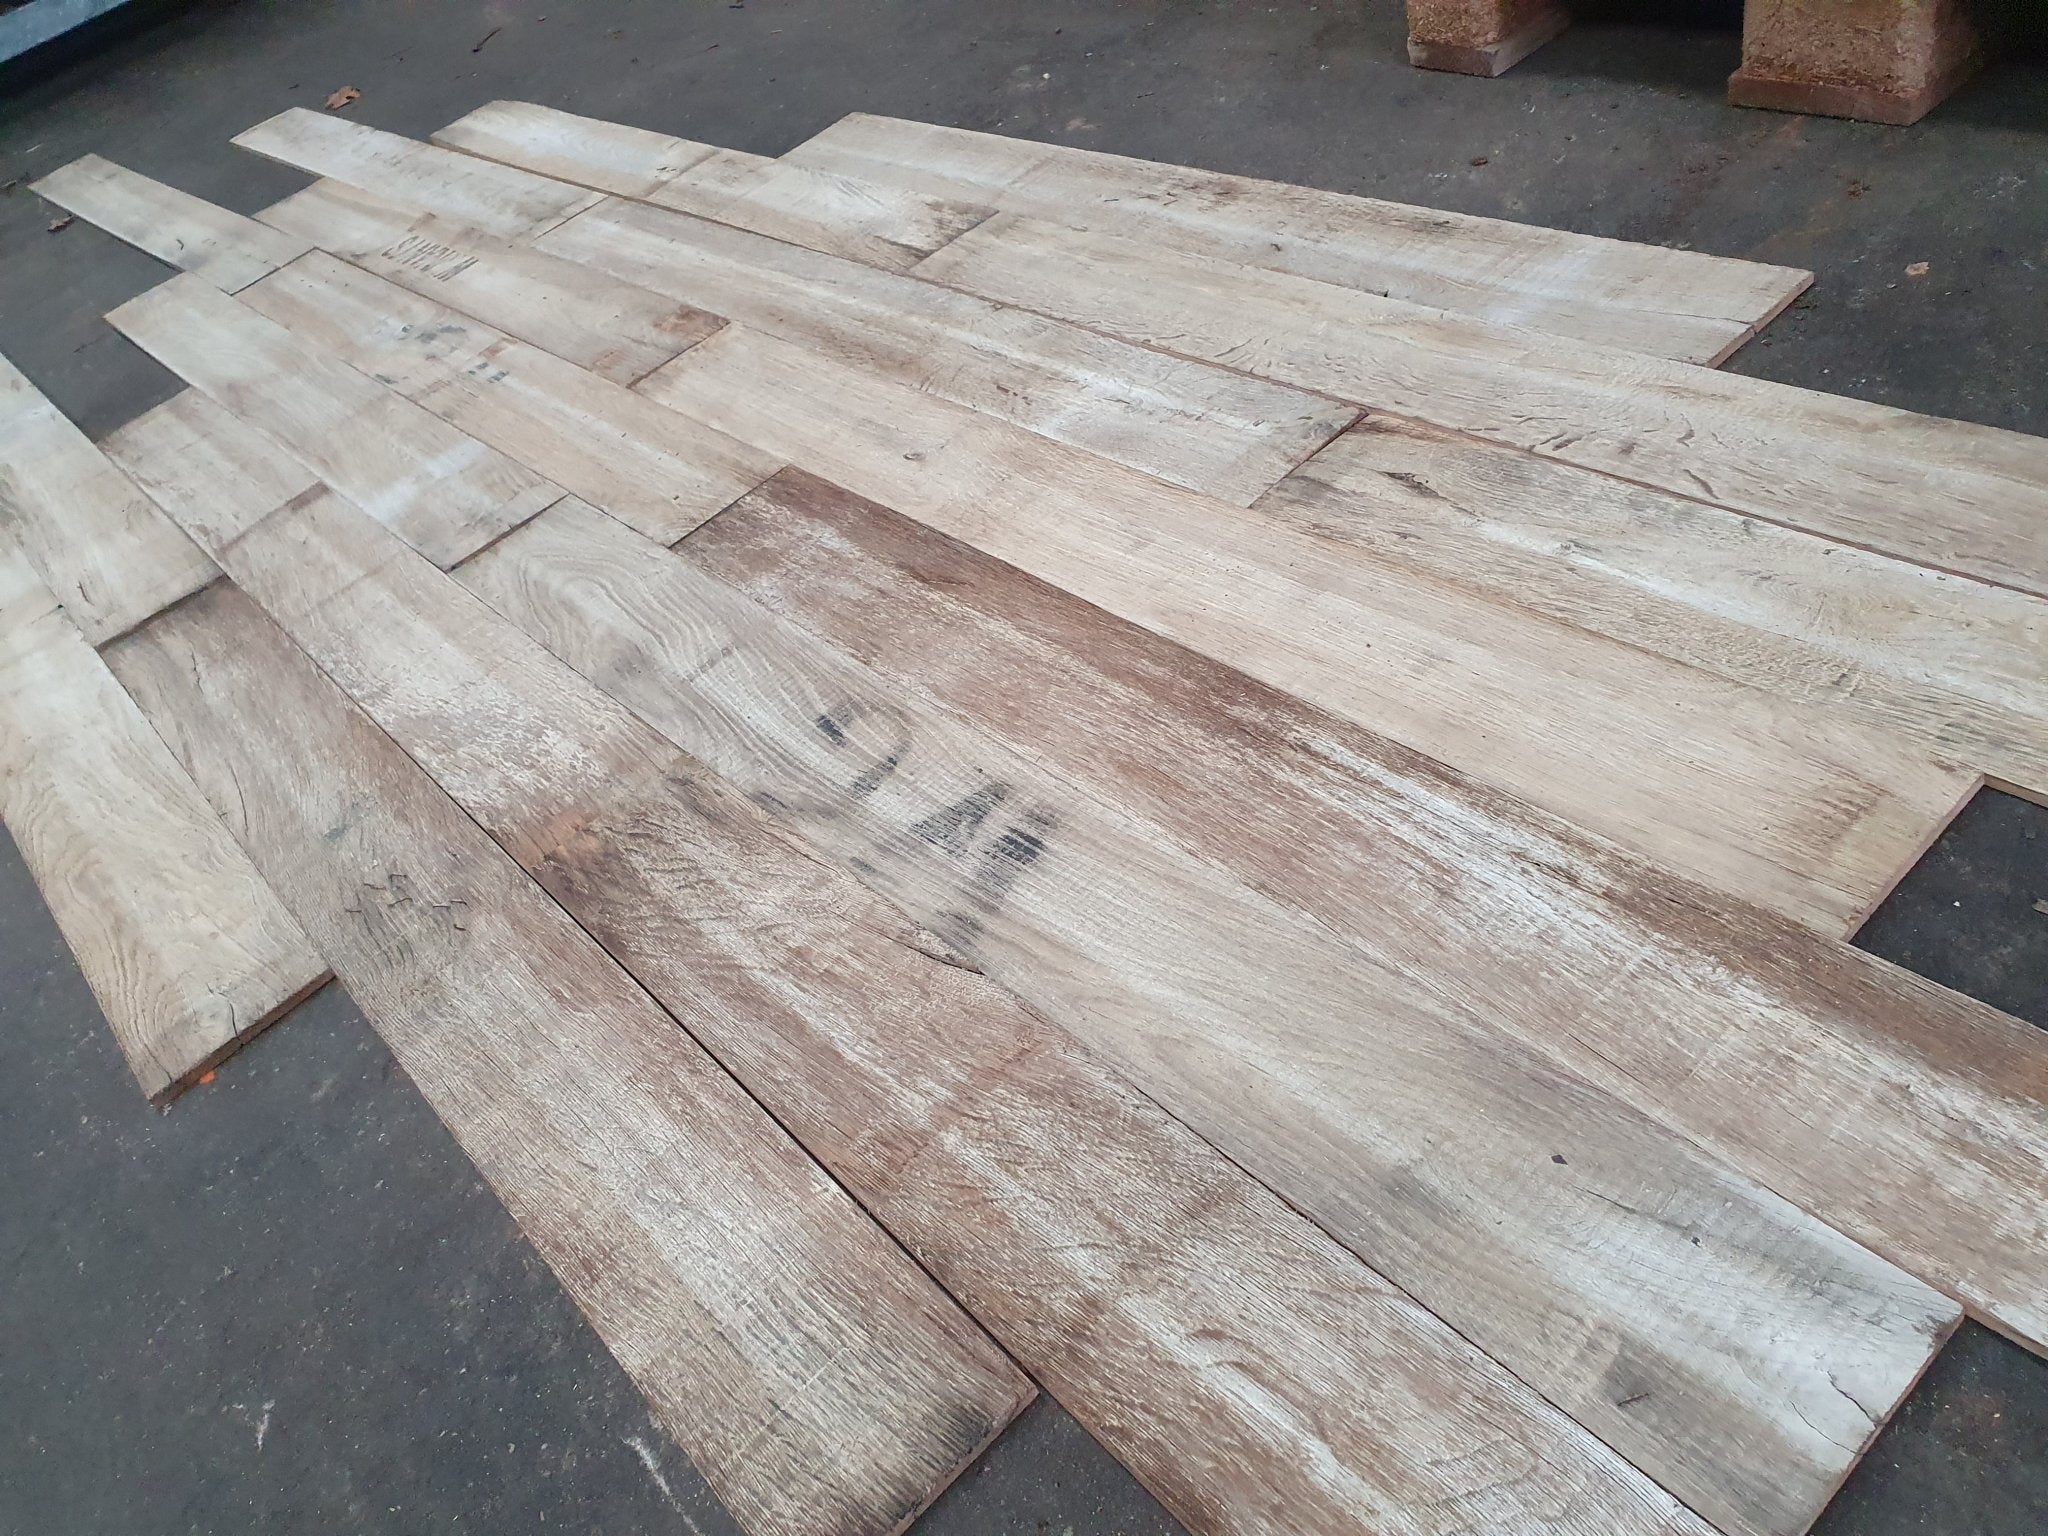 De charme van oud hout herleeft in deze "white wash" planken van Europese Eik. Een milieuvriendelijke keuze voor circulair bouwen.